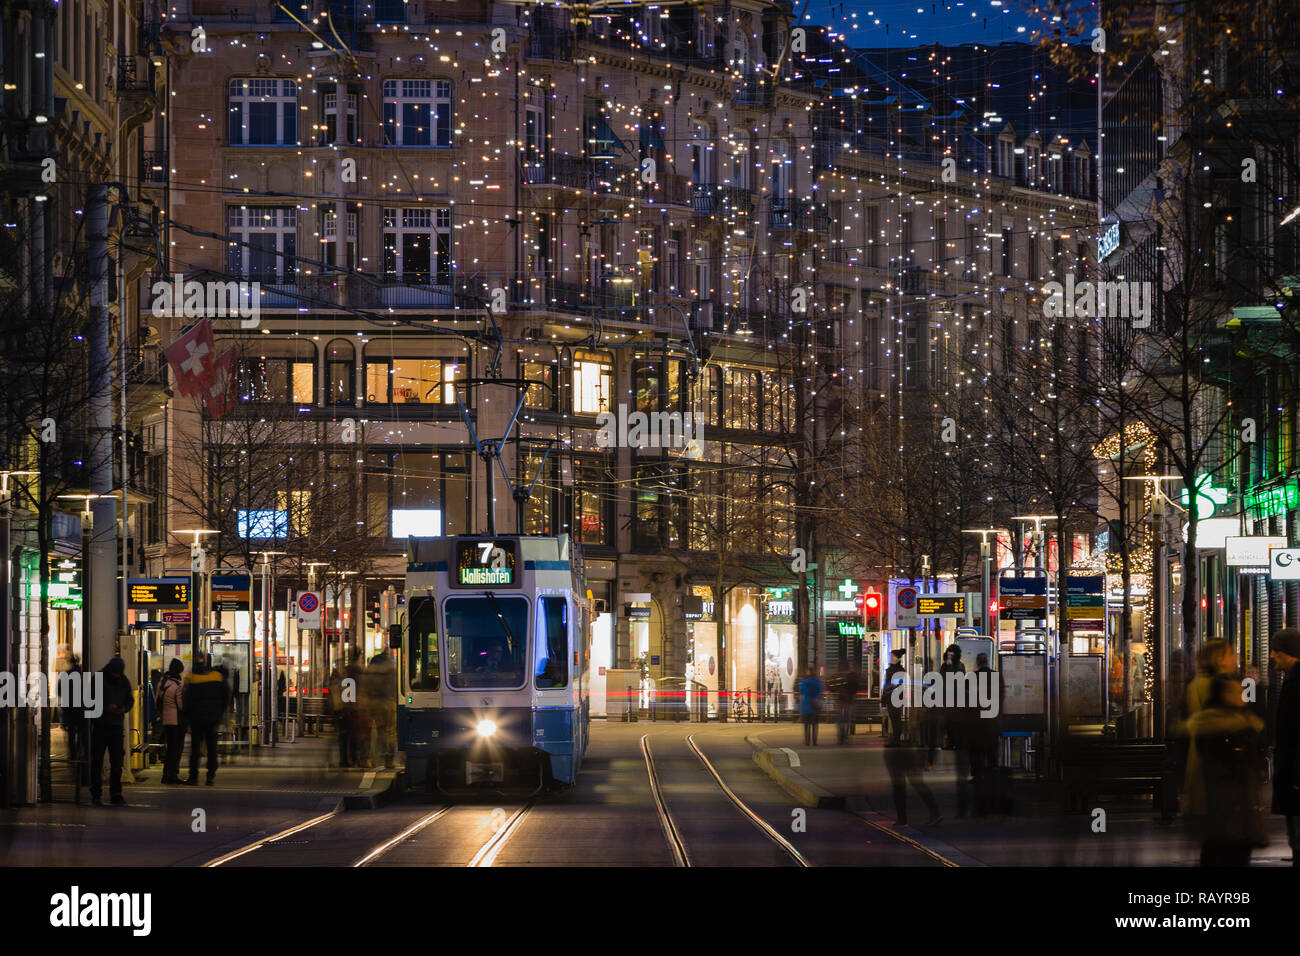 Les lumières de Noël à la Bahnhofstrasse, Zurich, Suisse Banque D'Images